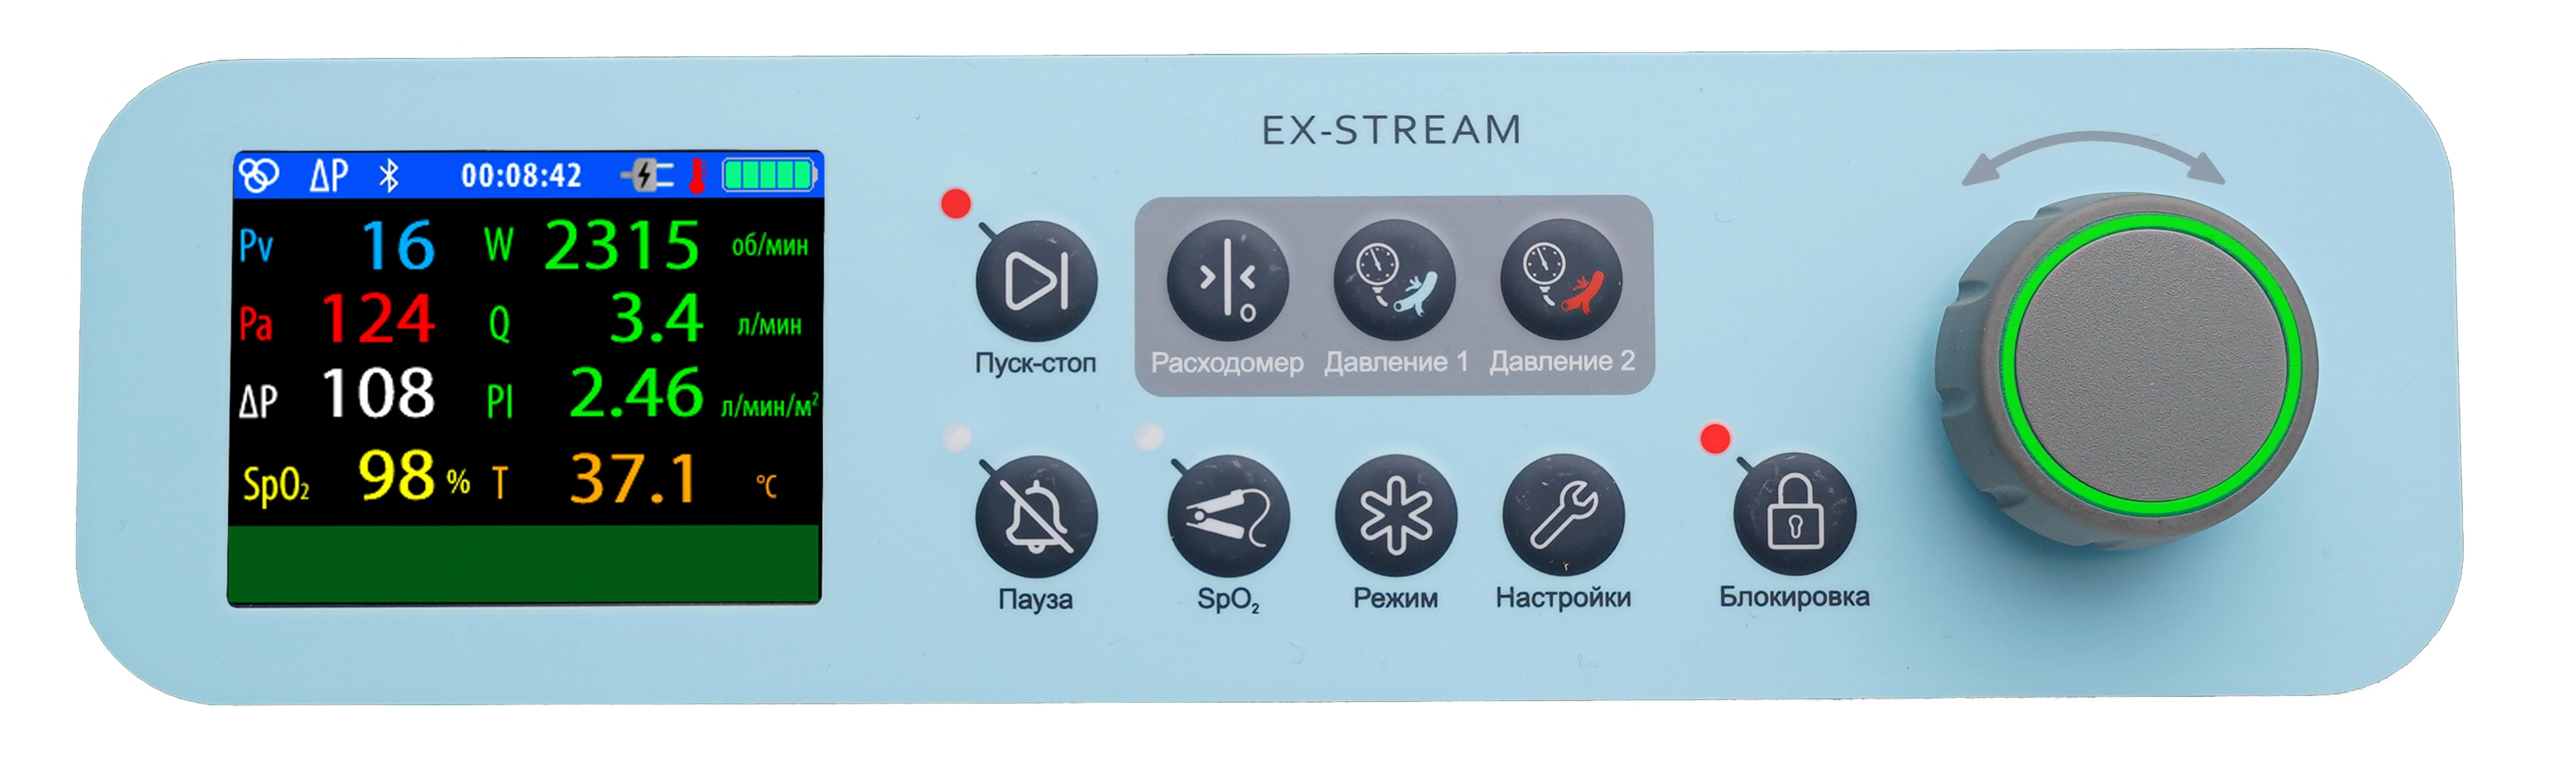 Лицевая панель комплекса&nbsp; "Eх-Stream"